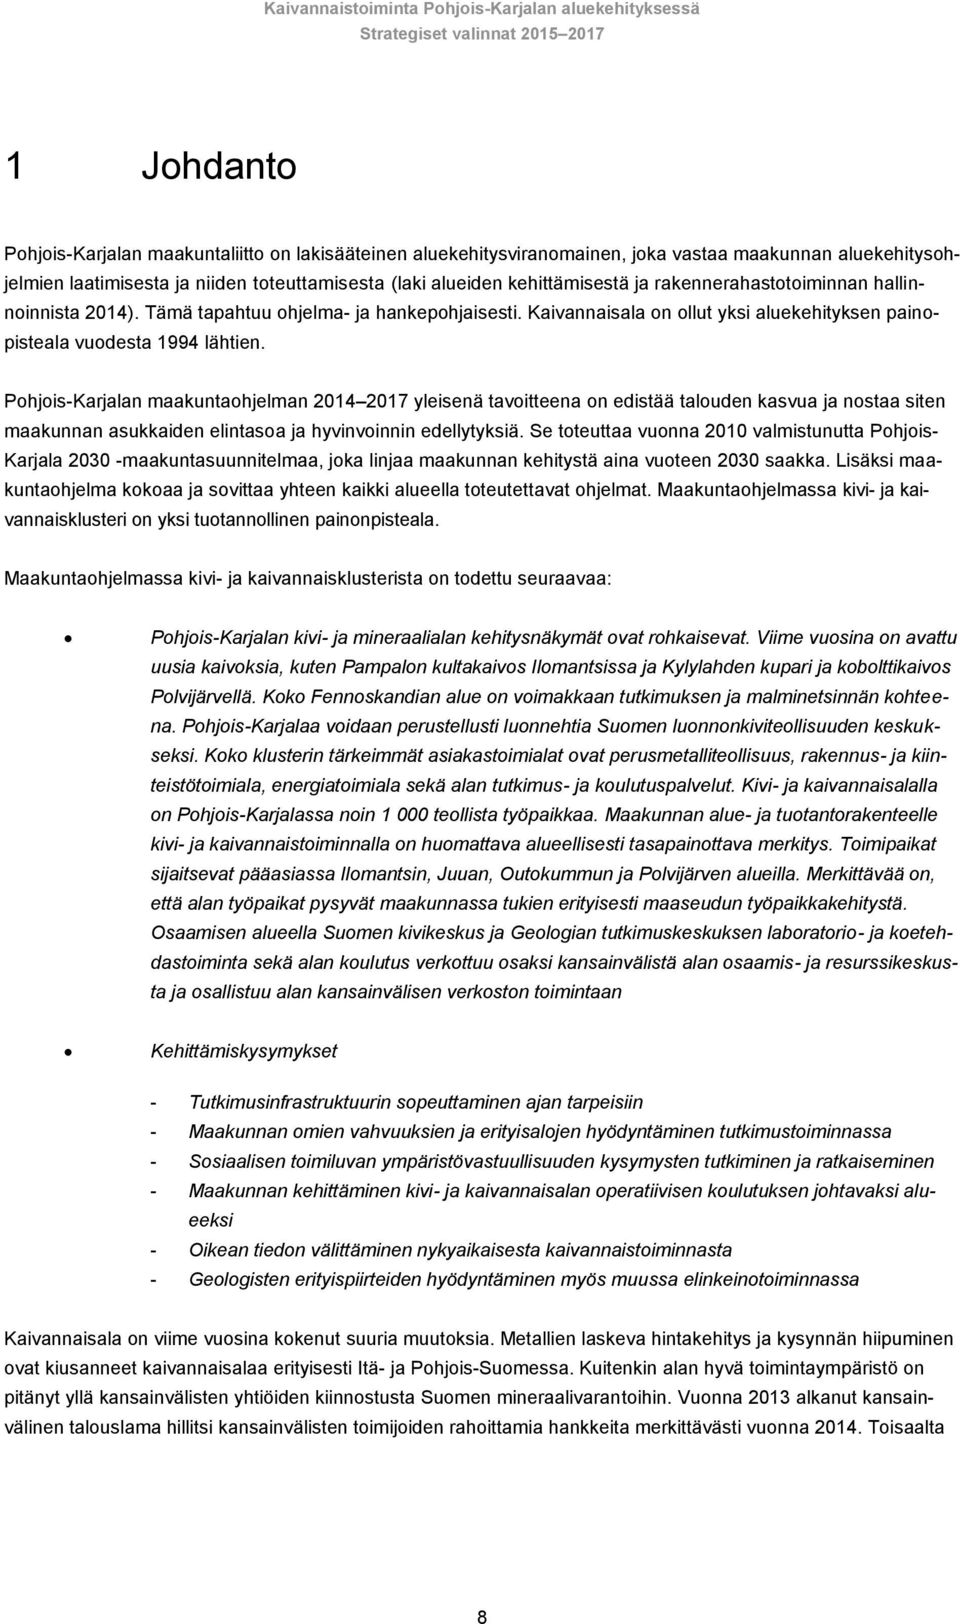 Pohjois-Karjalan maakuntaohjelman 2014 2017 yleisenä tavoitteena on edistää talouden kasvua ja nostaa siten maakunnan asukkaiden elintasoa ja hyvinvoinnin edellytyksiä.